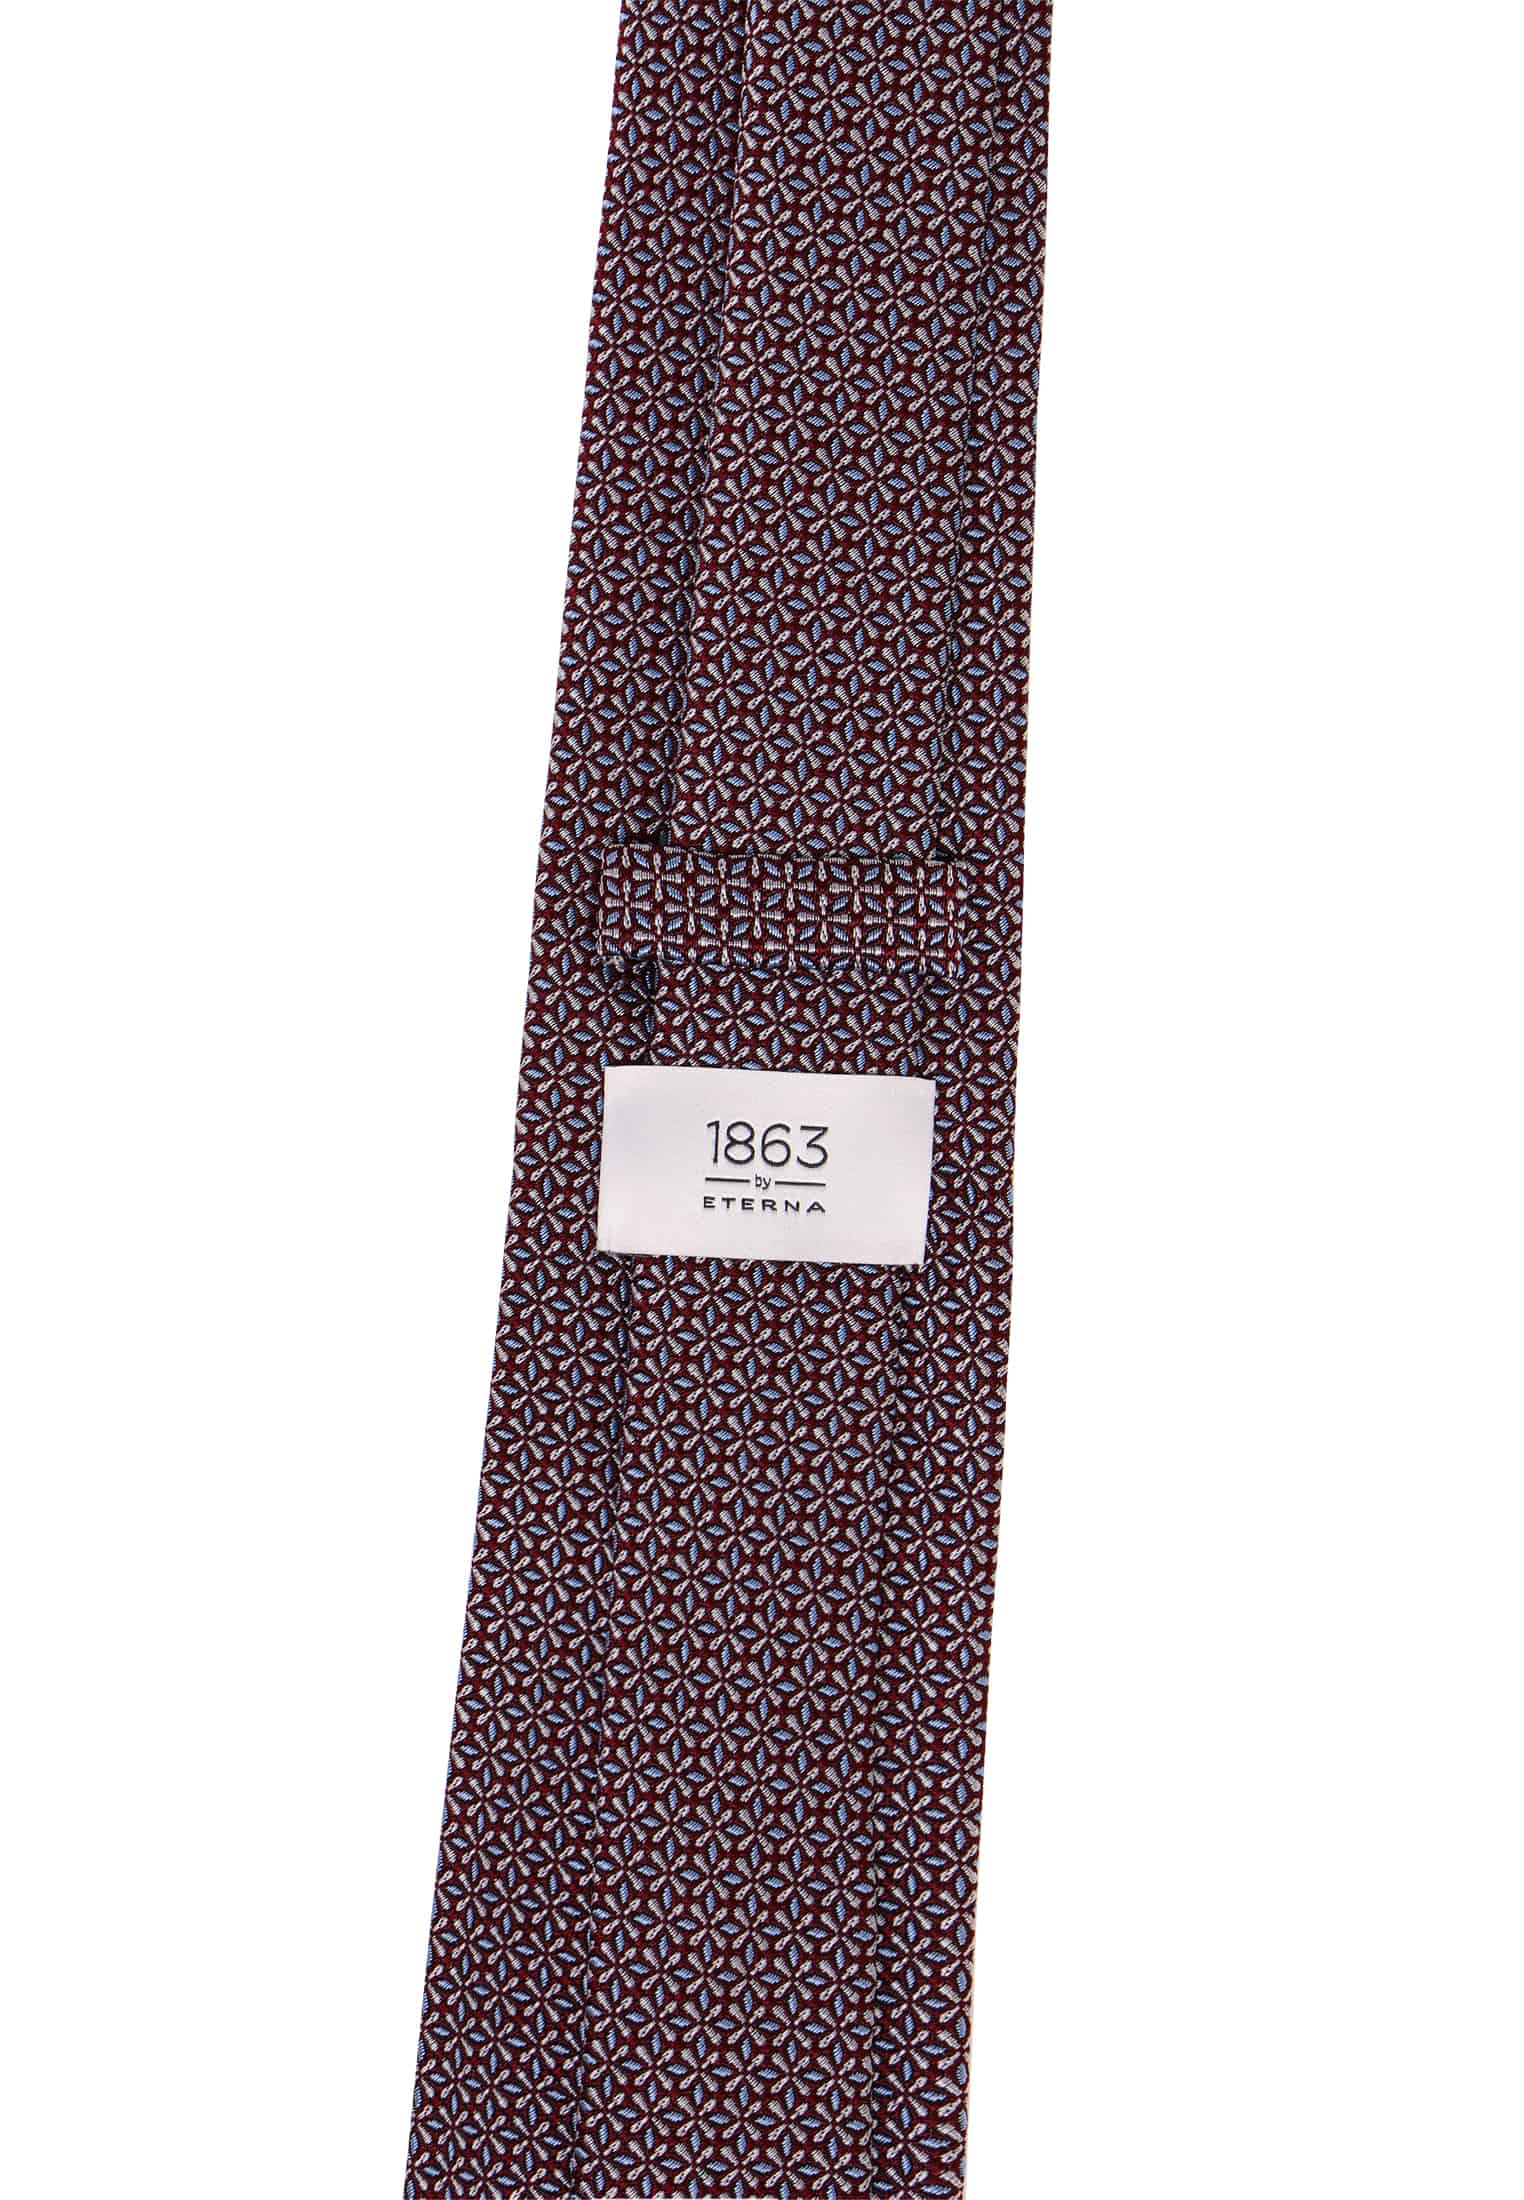 Krawatte in braun strukturiert 142 | 1AC02043-02-91-142 | braun 